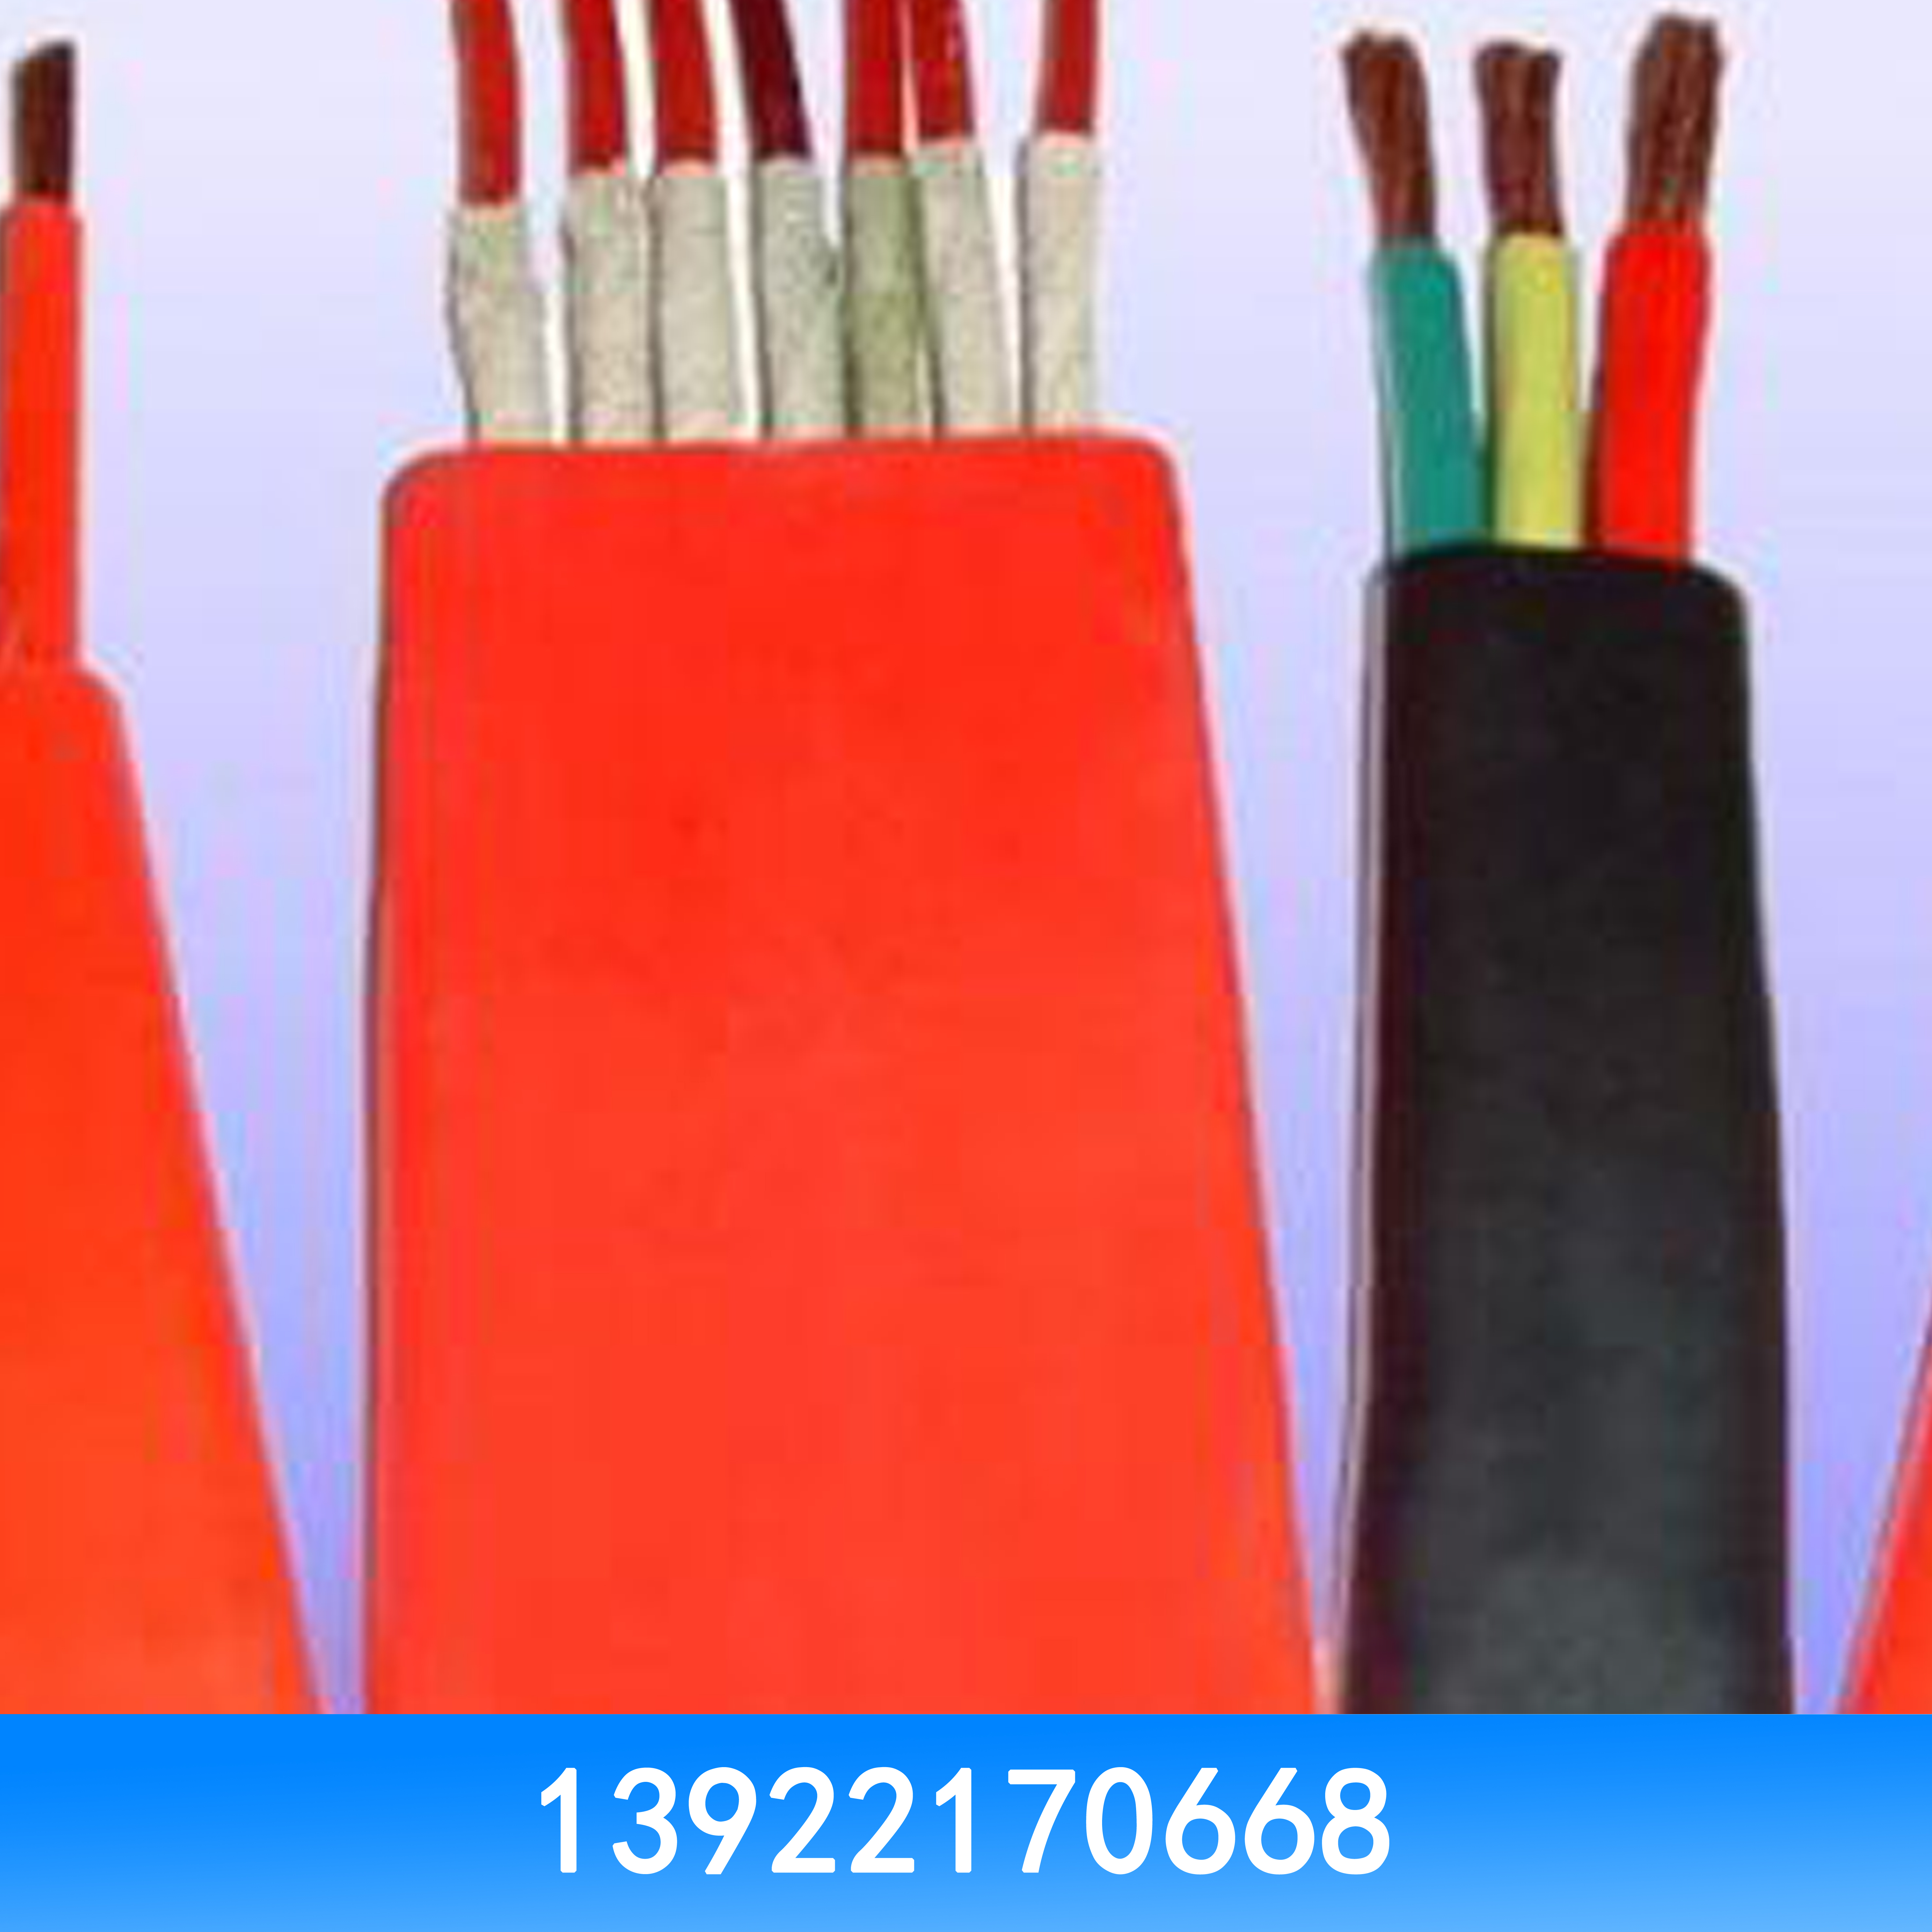 电线电缆回收 电线电缆回收价格 电线电缆回收批发 电线电缆回收厂家图片